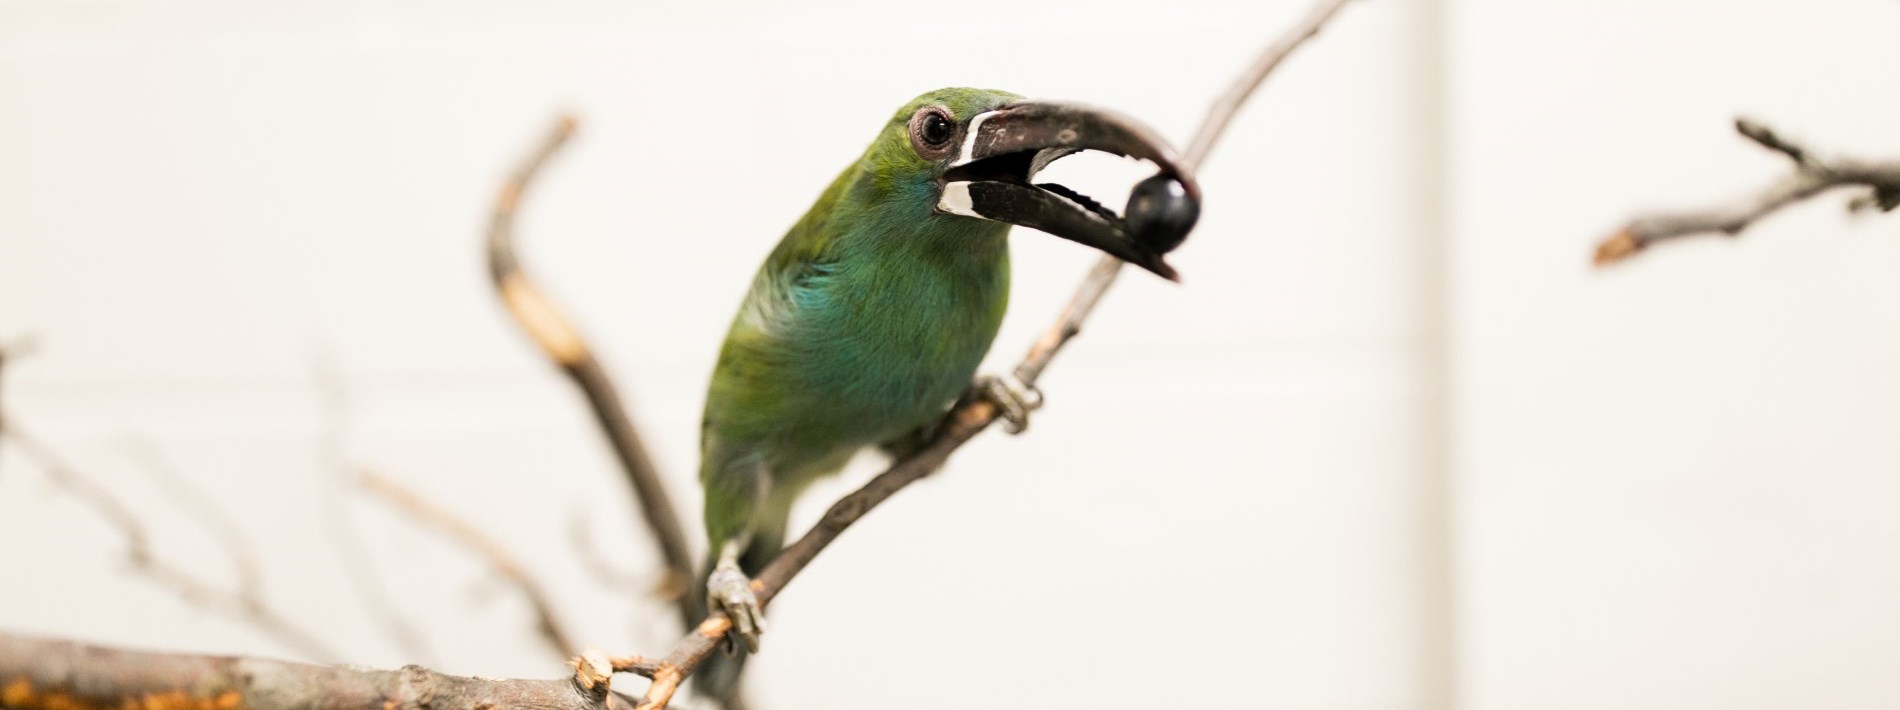 bird with grape in beak